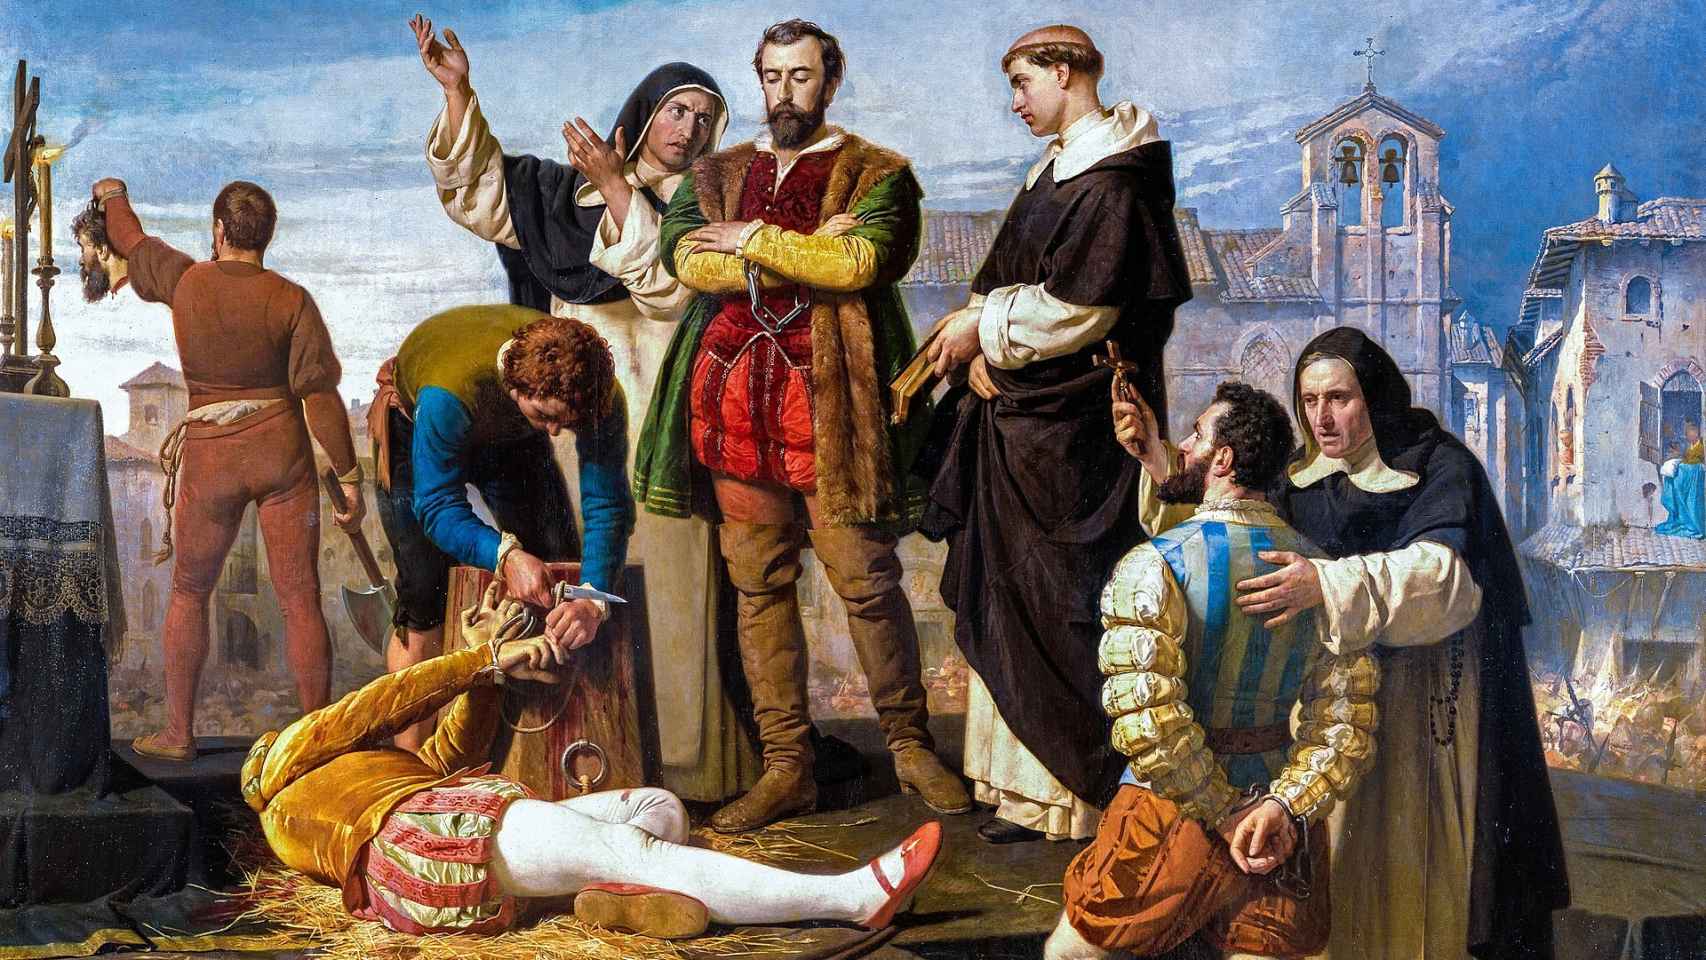 La ejecución de los comuneros Juan de Padilla, Juan Bravo y Francisco Maldonado en Villalar el día 24 de abril de 1521.